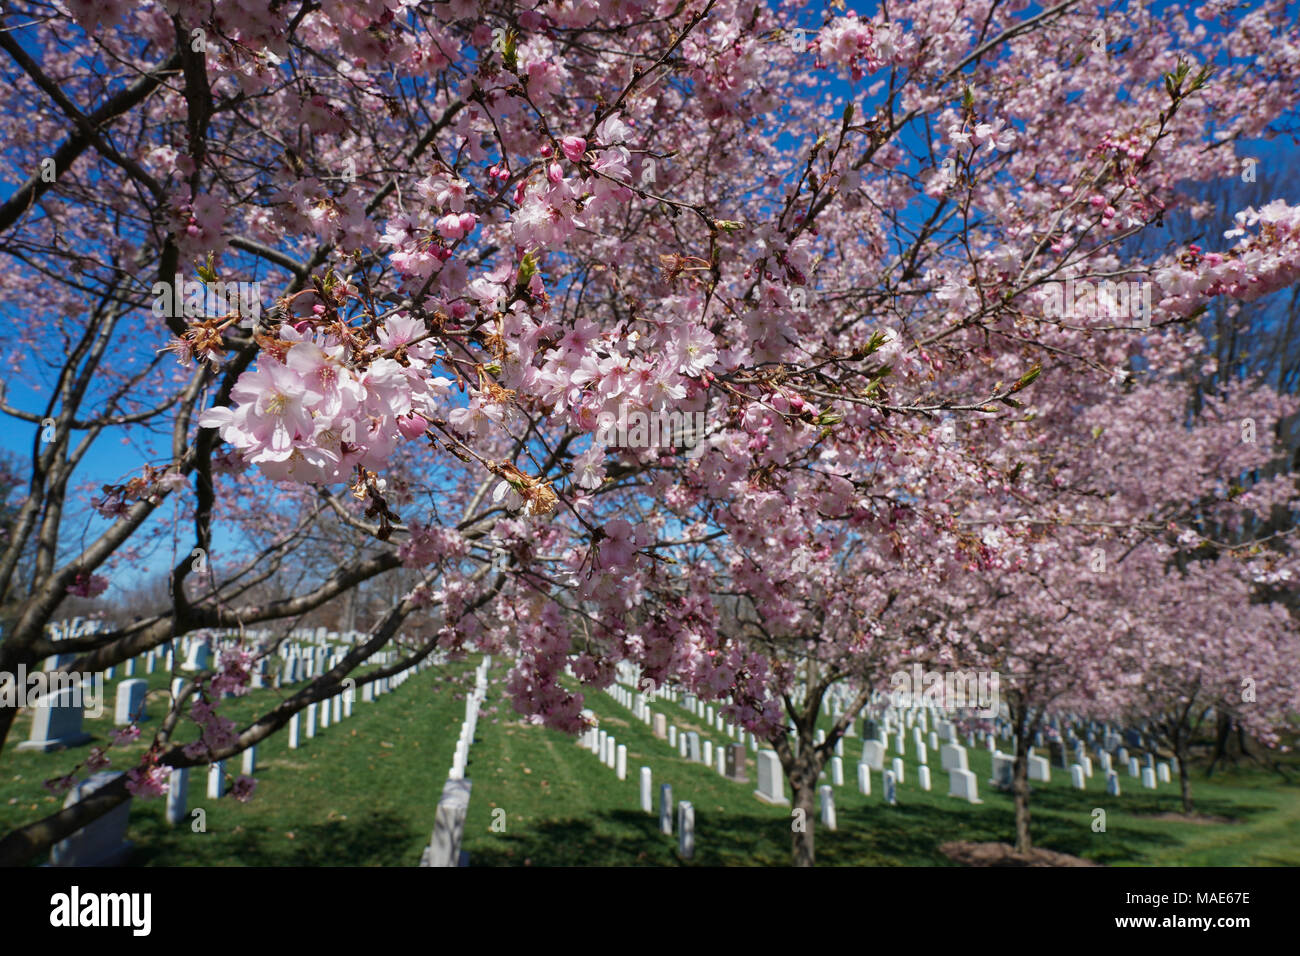 Die erste Blüte der Kirschblüte in den Arlington Friedhof. Foto Datum: Samstag, 31. März 2018. Foto: Roger Garfield/Alamy Credit: Roger Garfield/Alamy leben Nachrichten Stockfoto